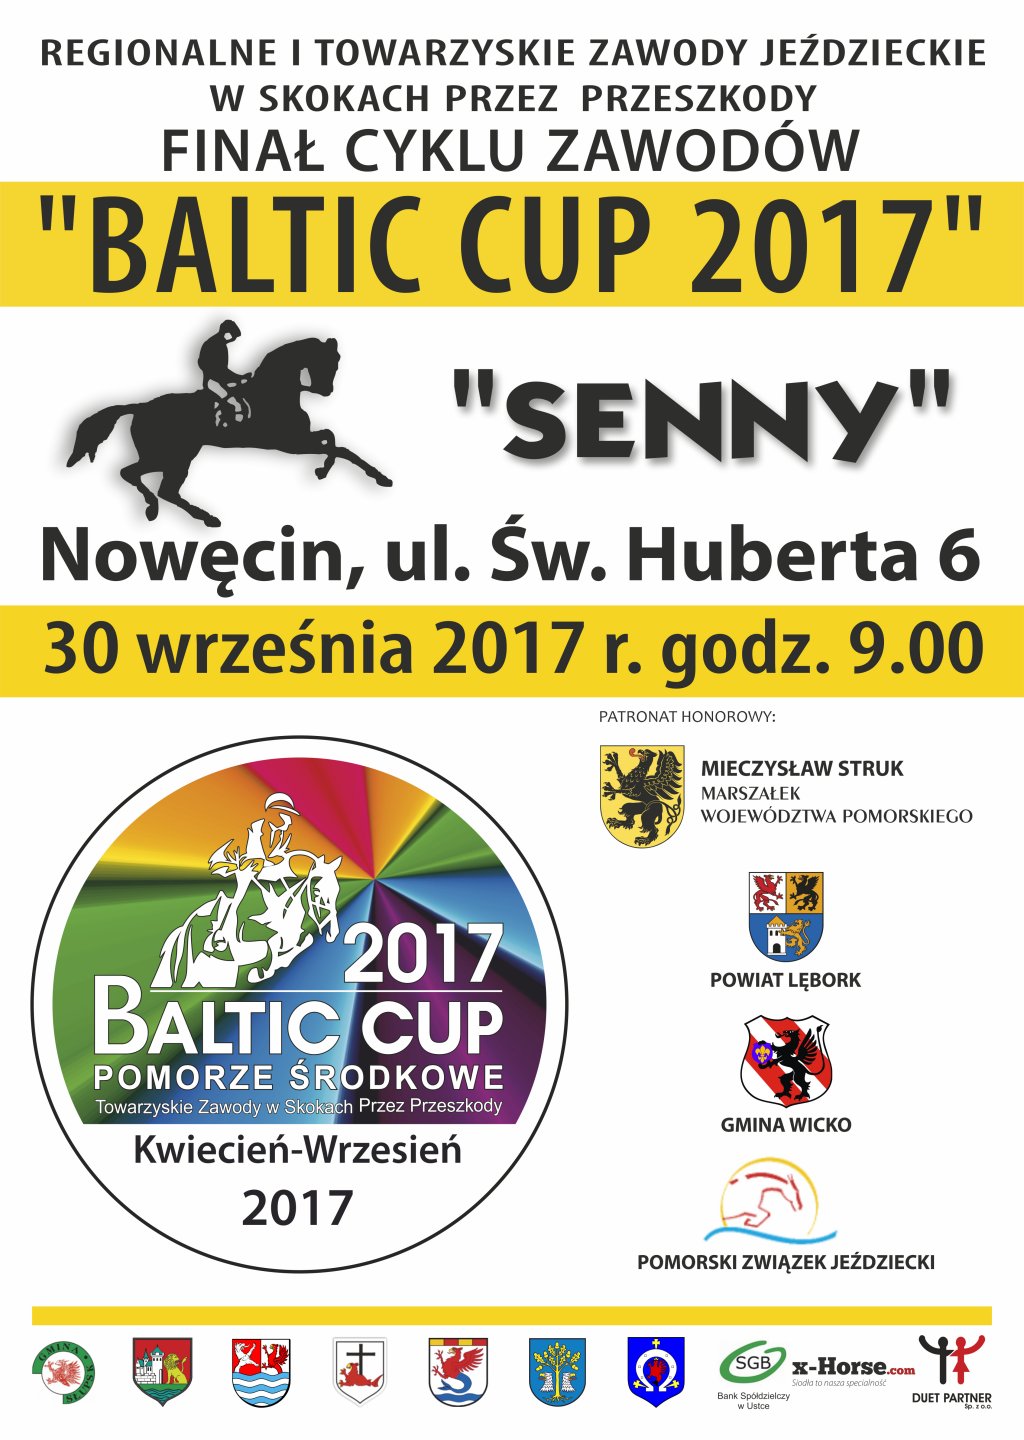 Plakat Baltic Cup 2017 - zawierający zamieszczone wyżej informacje.